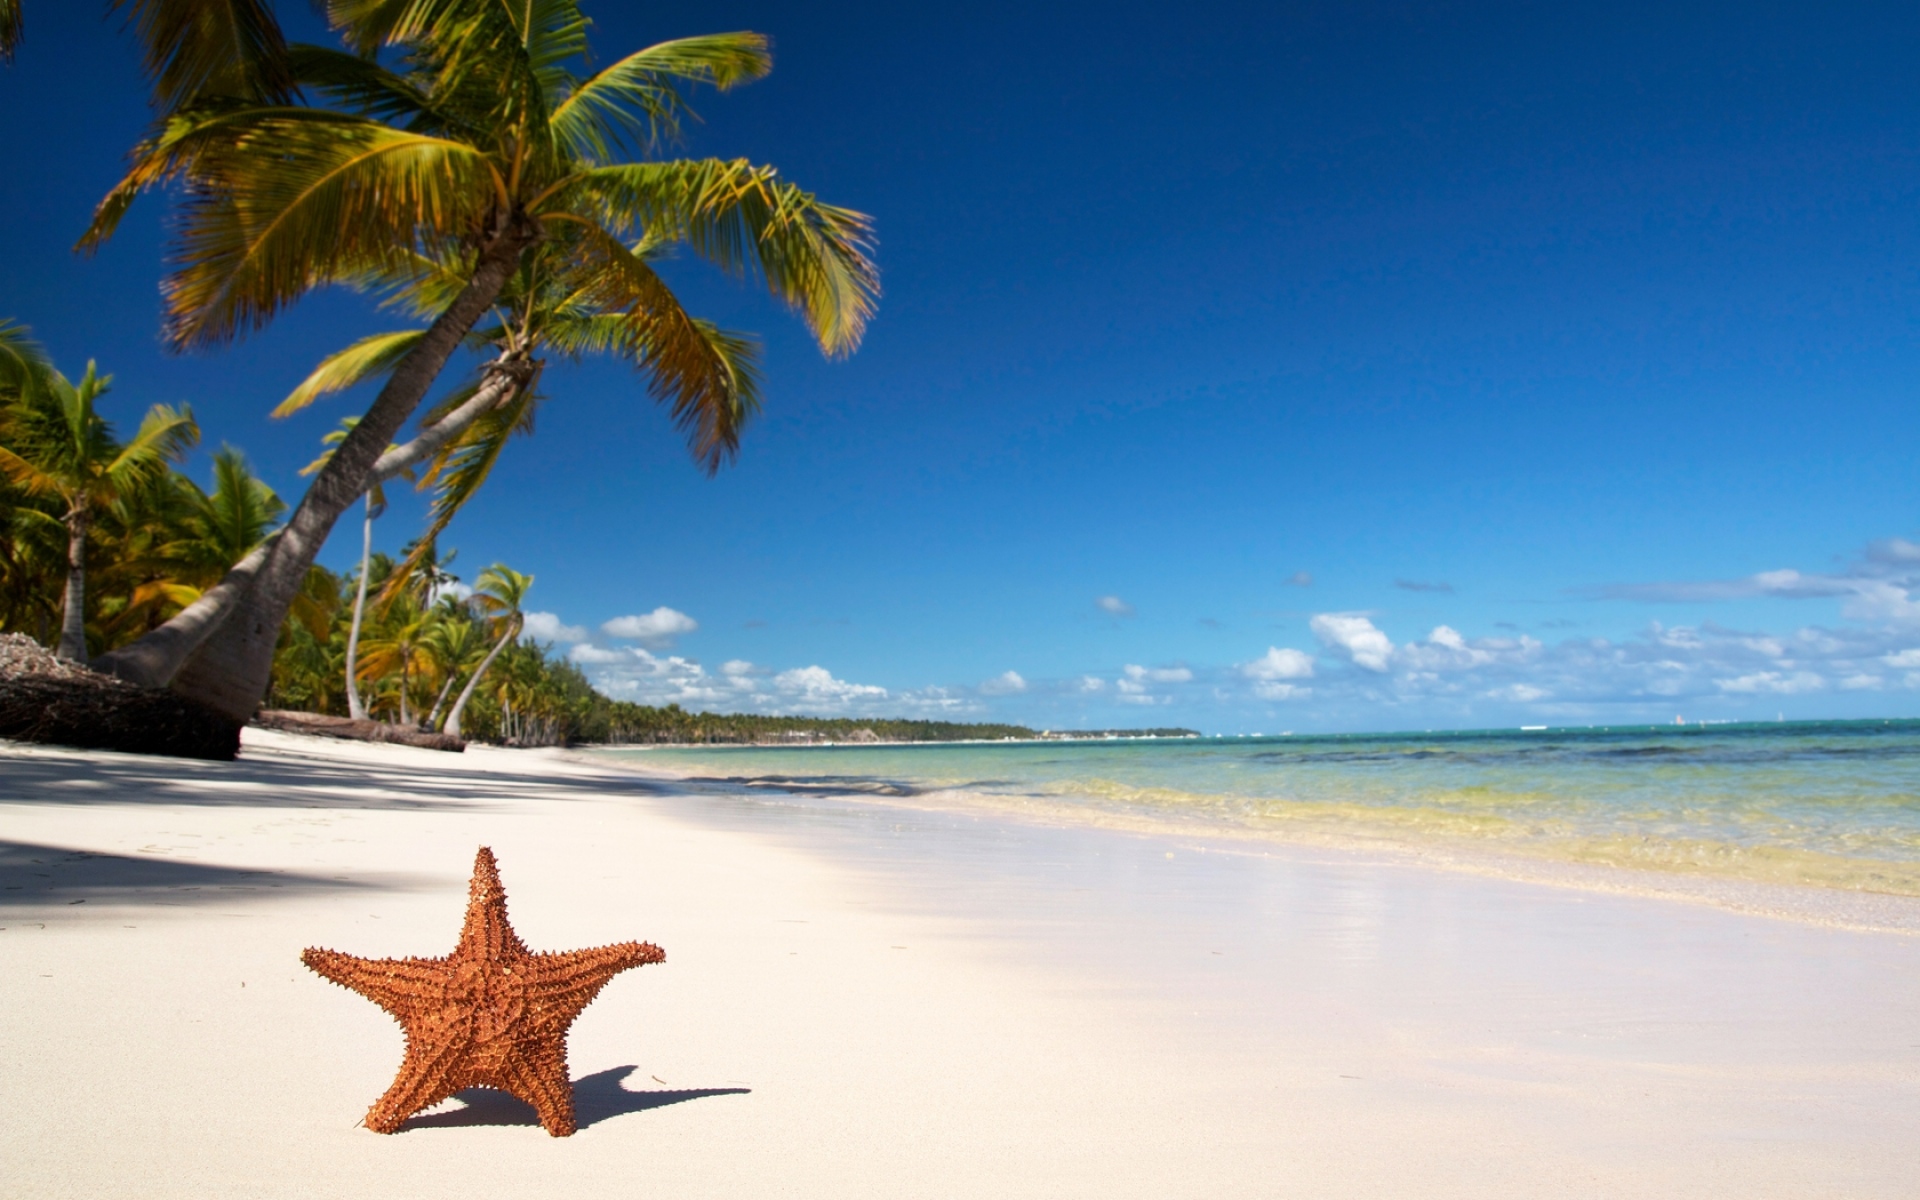 Картинки Звезда, побережье, пляж, песок, пальмы, тропики фото и обои на рабочий стол